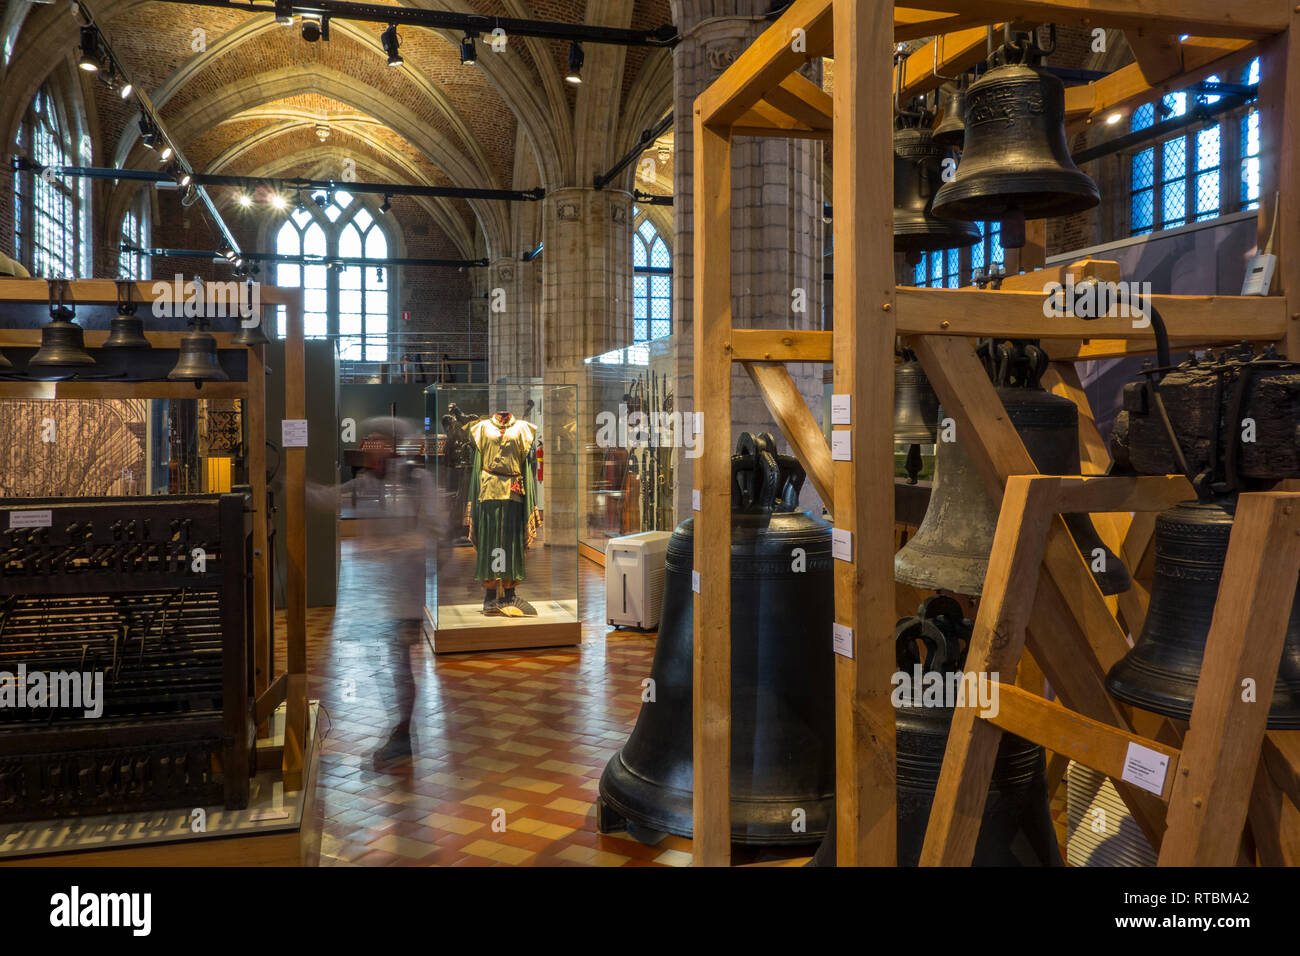 Vleeshuis / salón / carnicero carne House, antigua lonja ahora museo sobre instrumentos musicales en Antwerp, Bélgica. Foto de stock